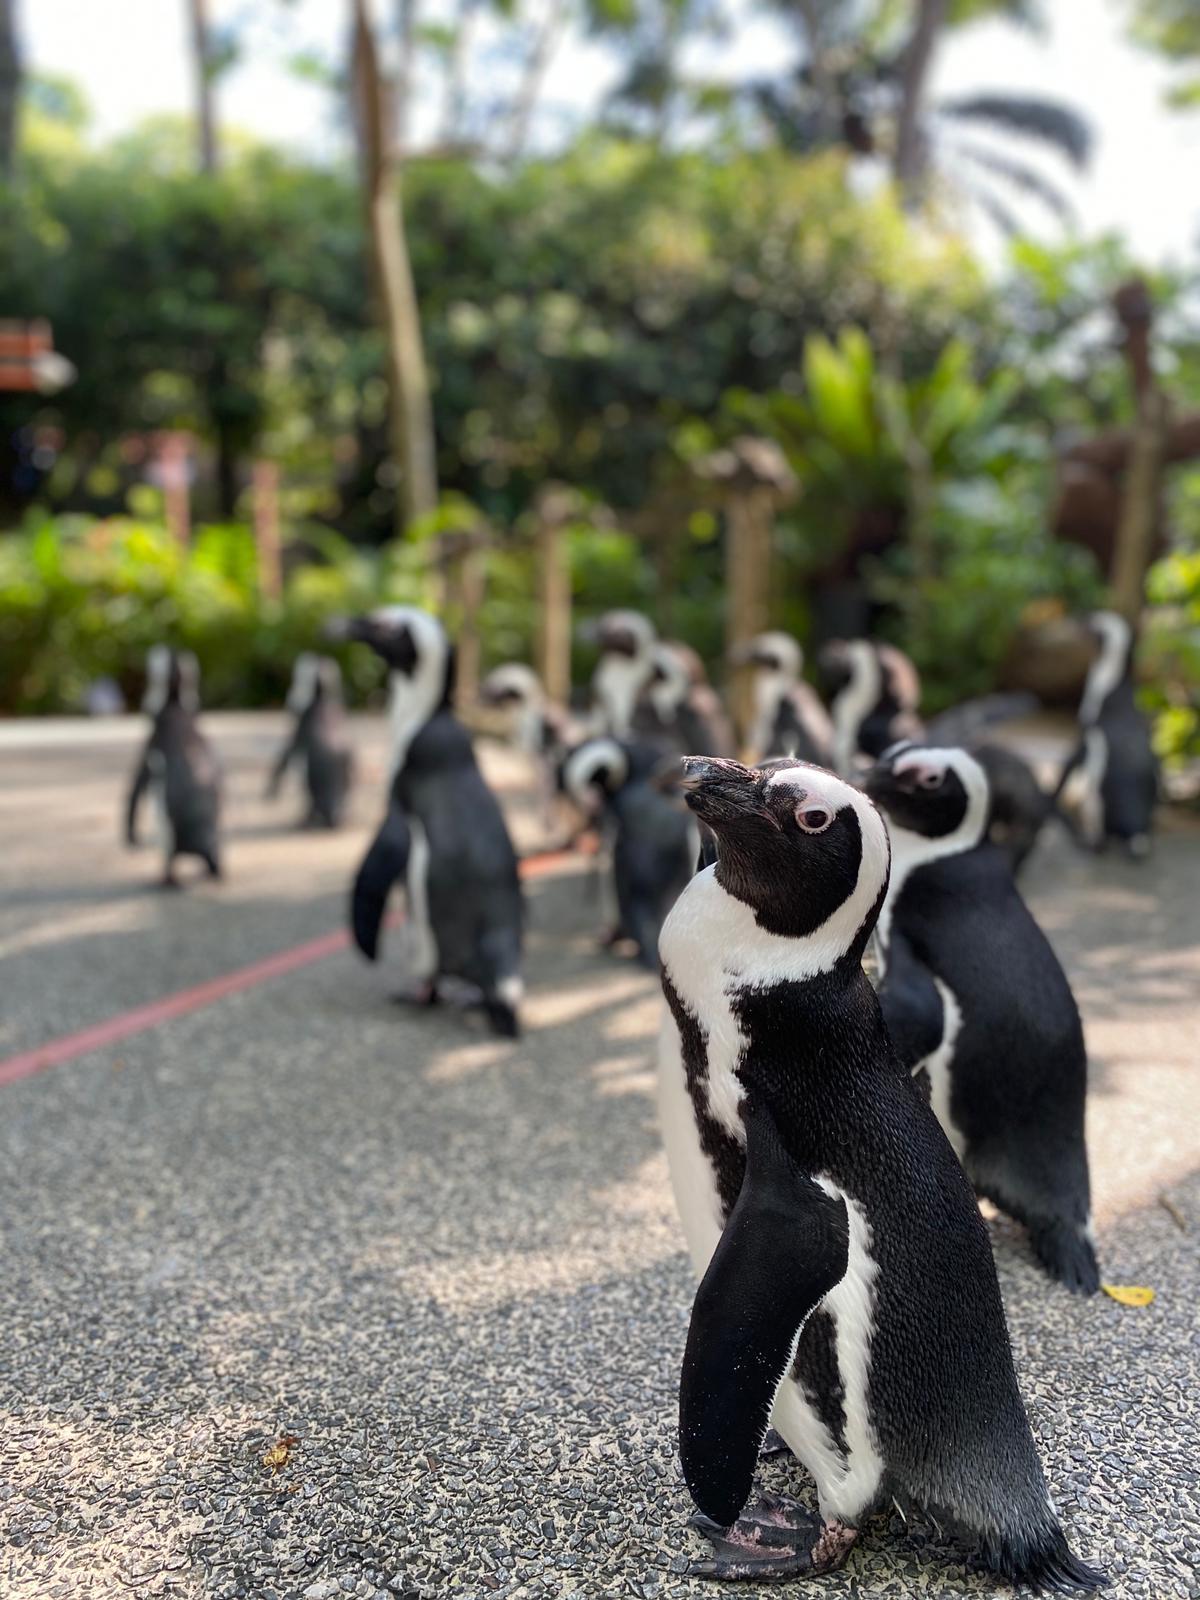 动物园饲养员每周带领可爱的小企鹅“出走”两三次。-图摘自Wildlife Reserves Singapore脸书-